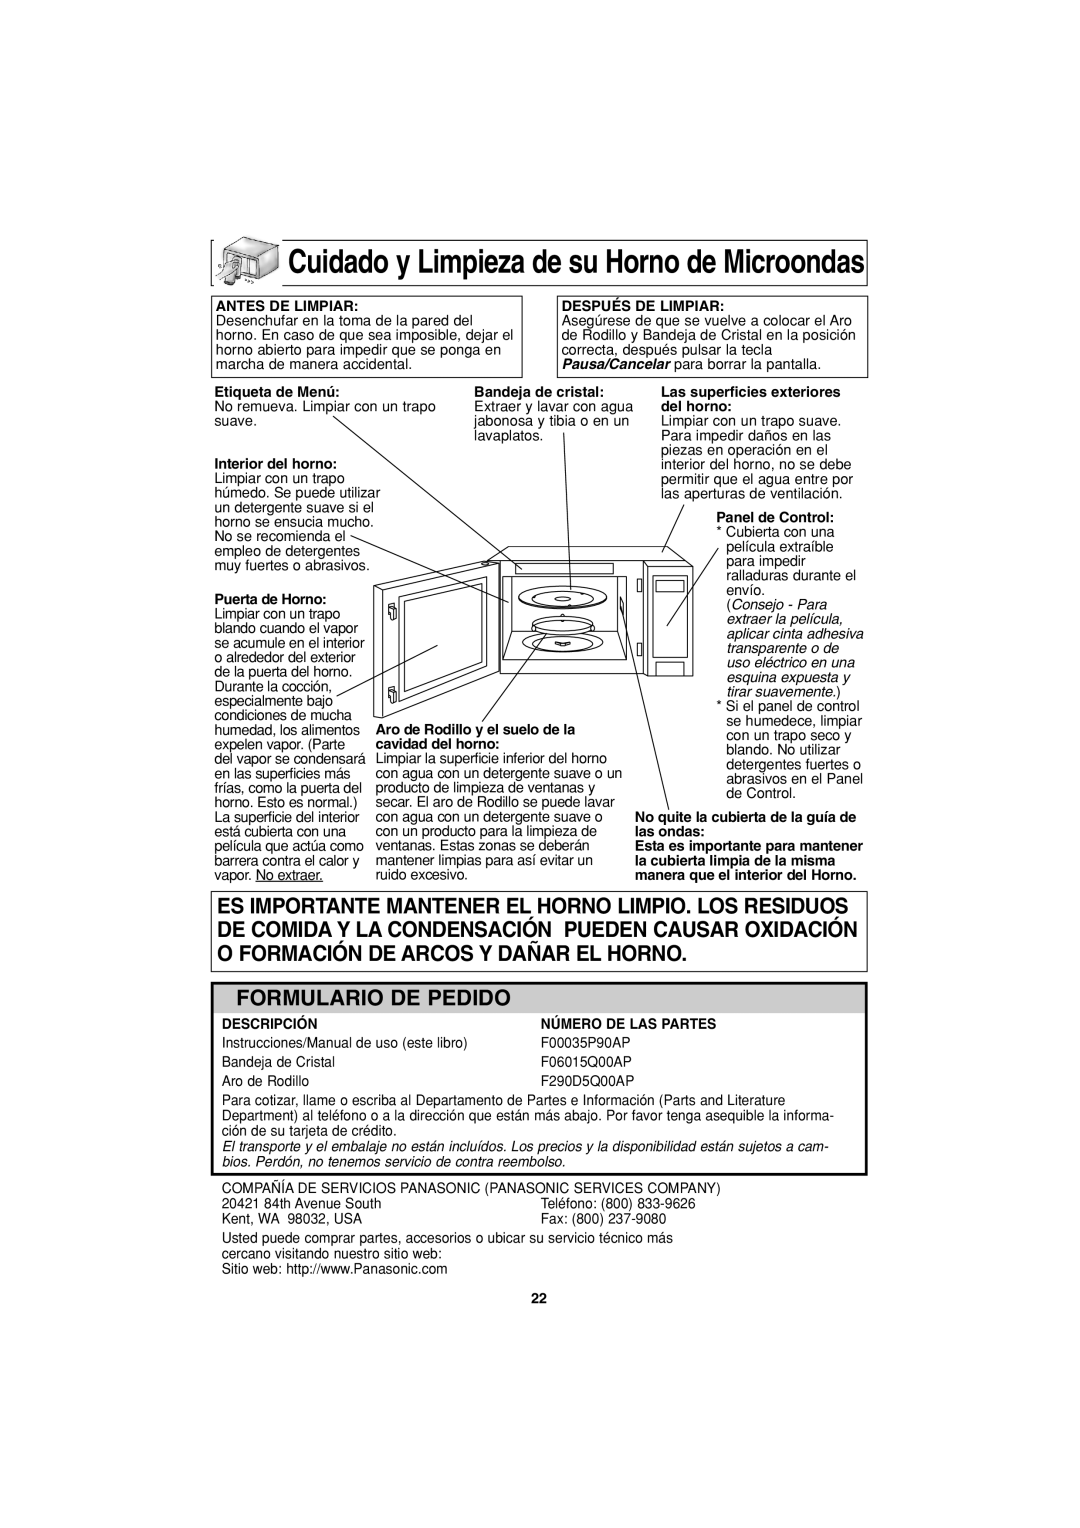 Panasonic NN-S423 important safety instructions Cuidado y Limpieza de su Horno de Microondas, Formulario De Pedido 